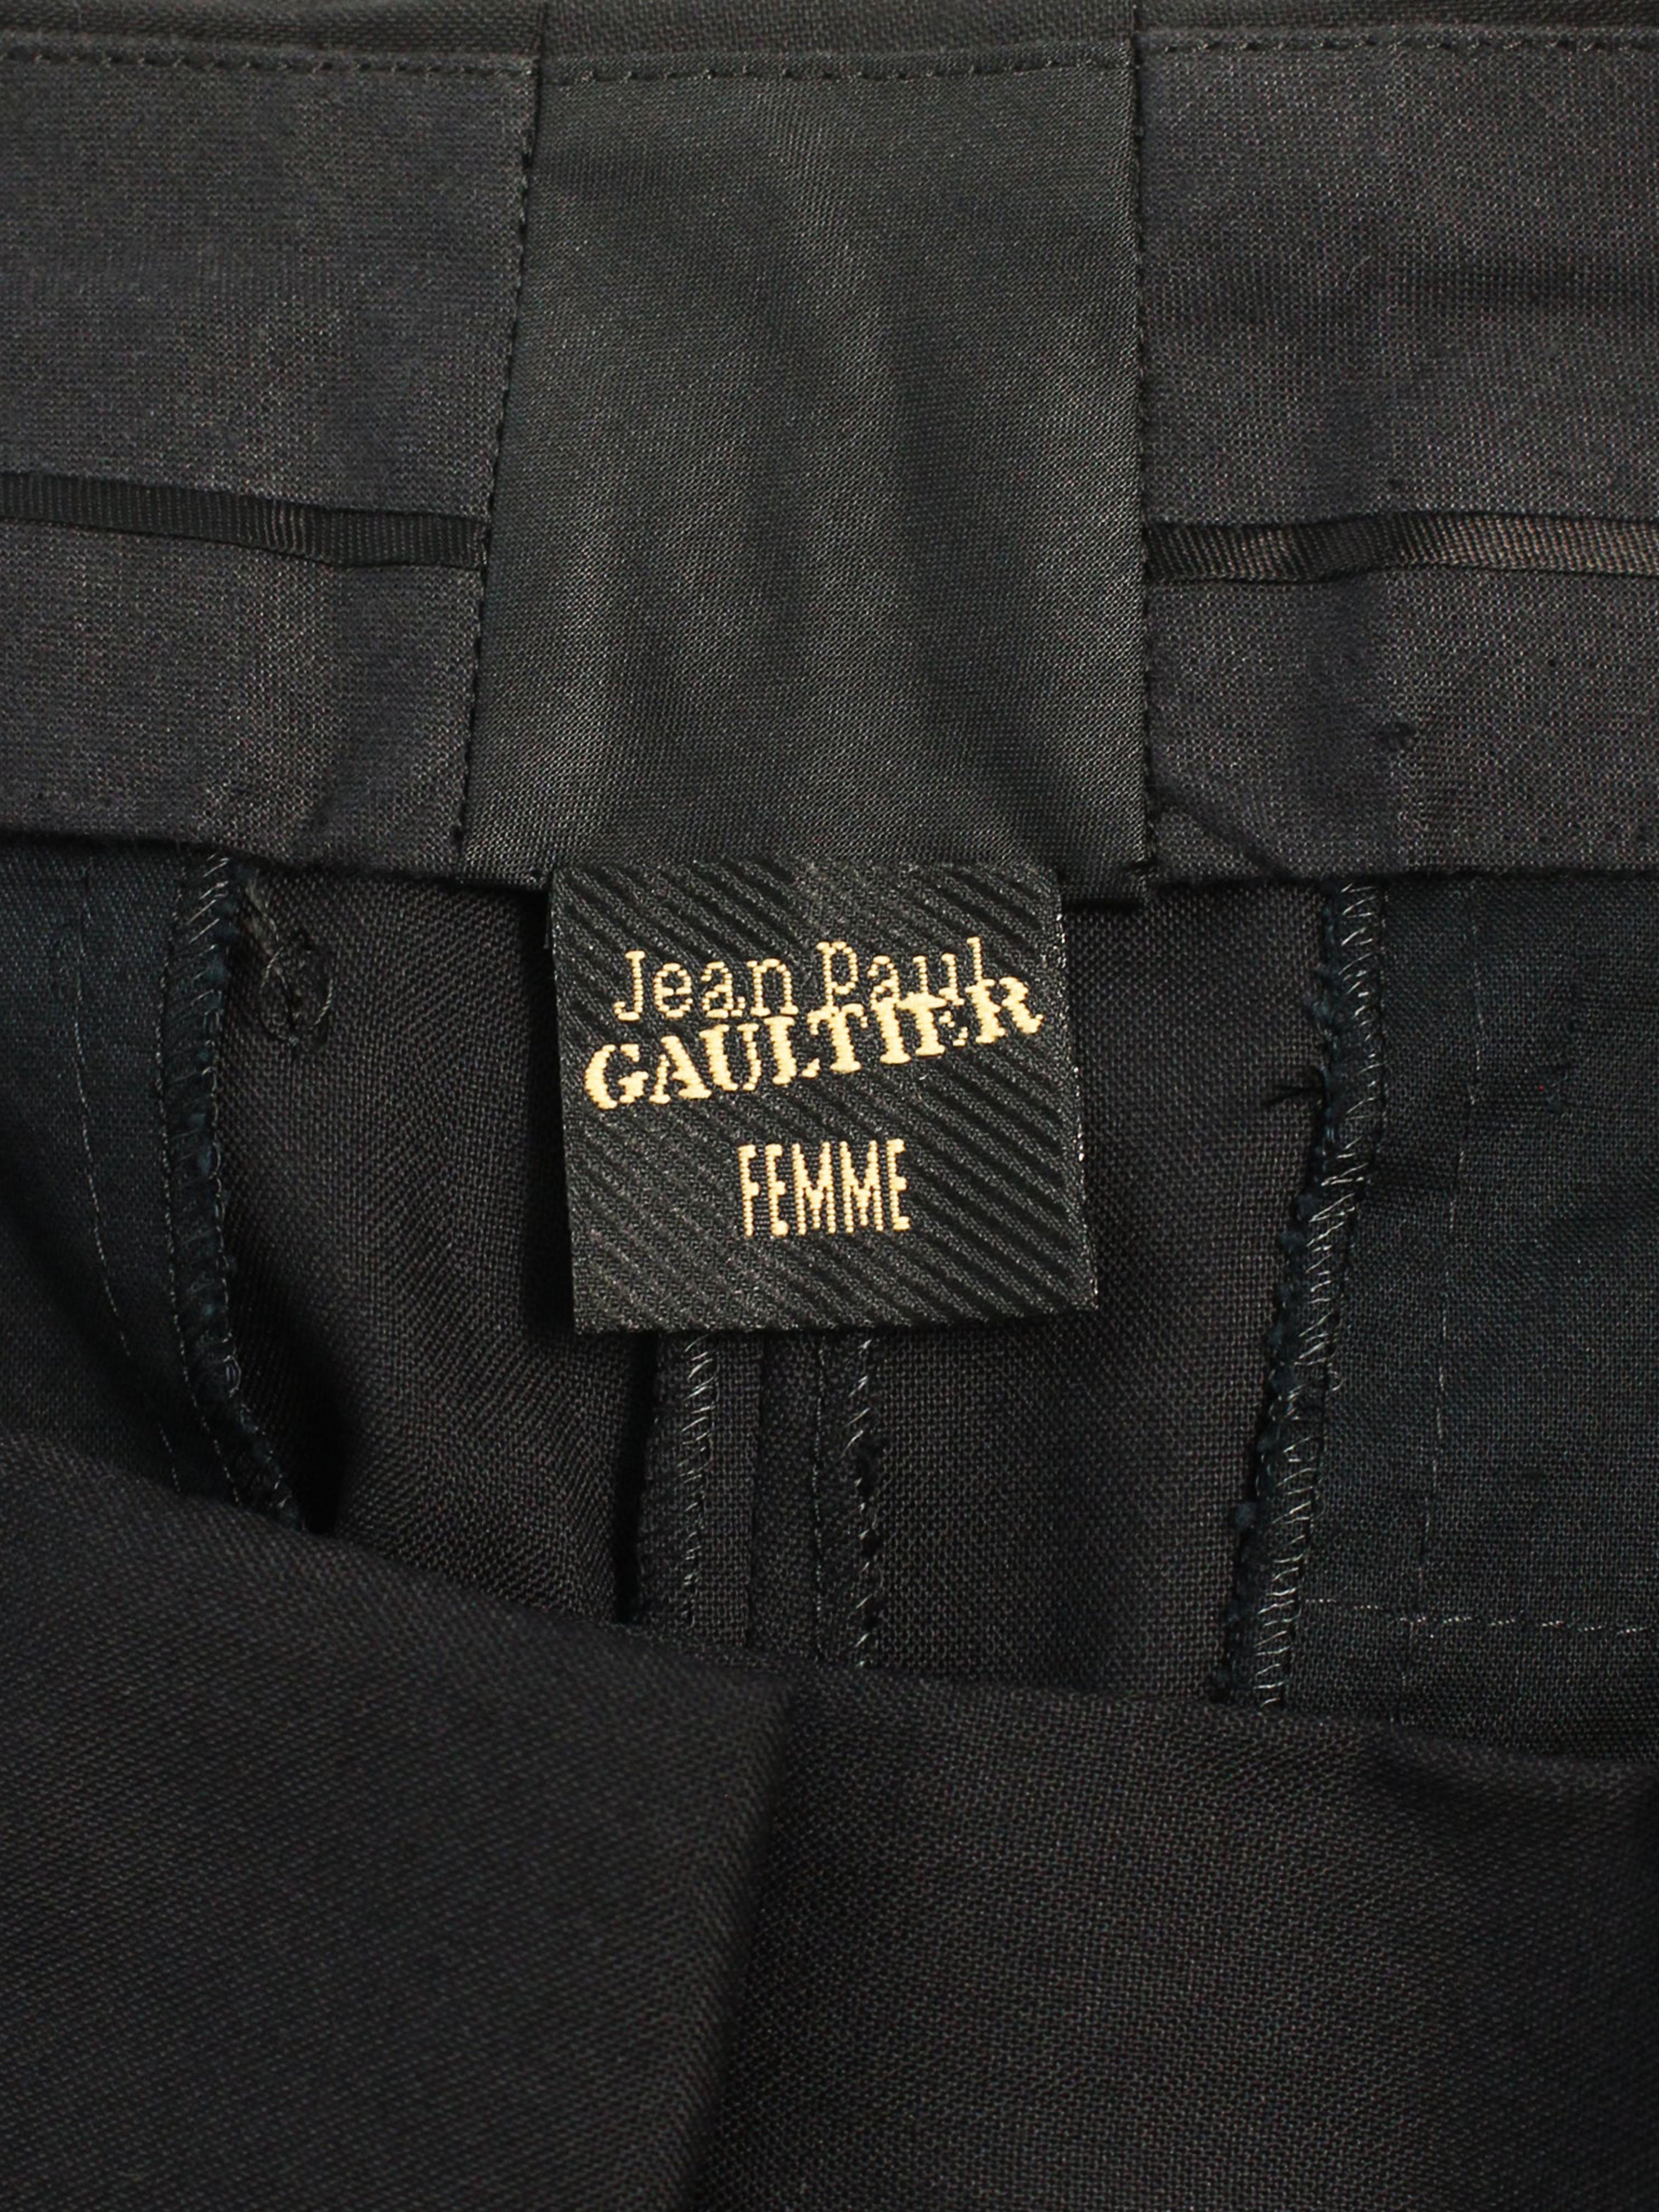 Jean Paul Gaultier 1990s Black Side Pleated Shorts